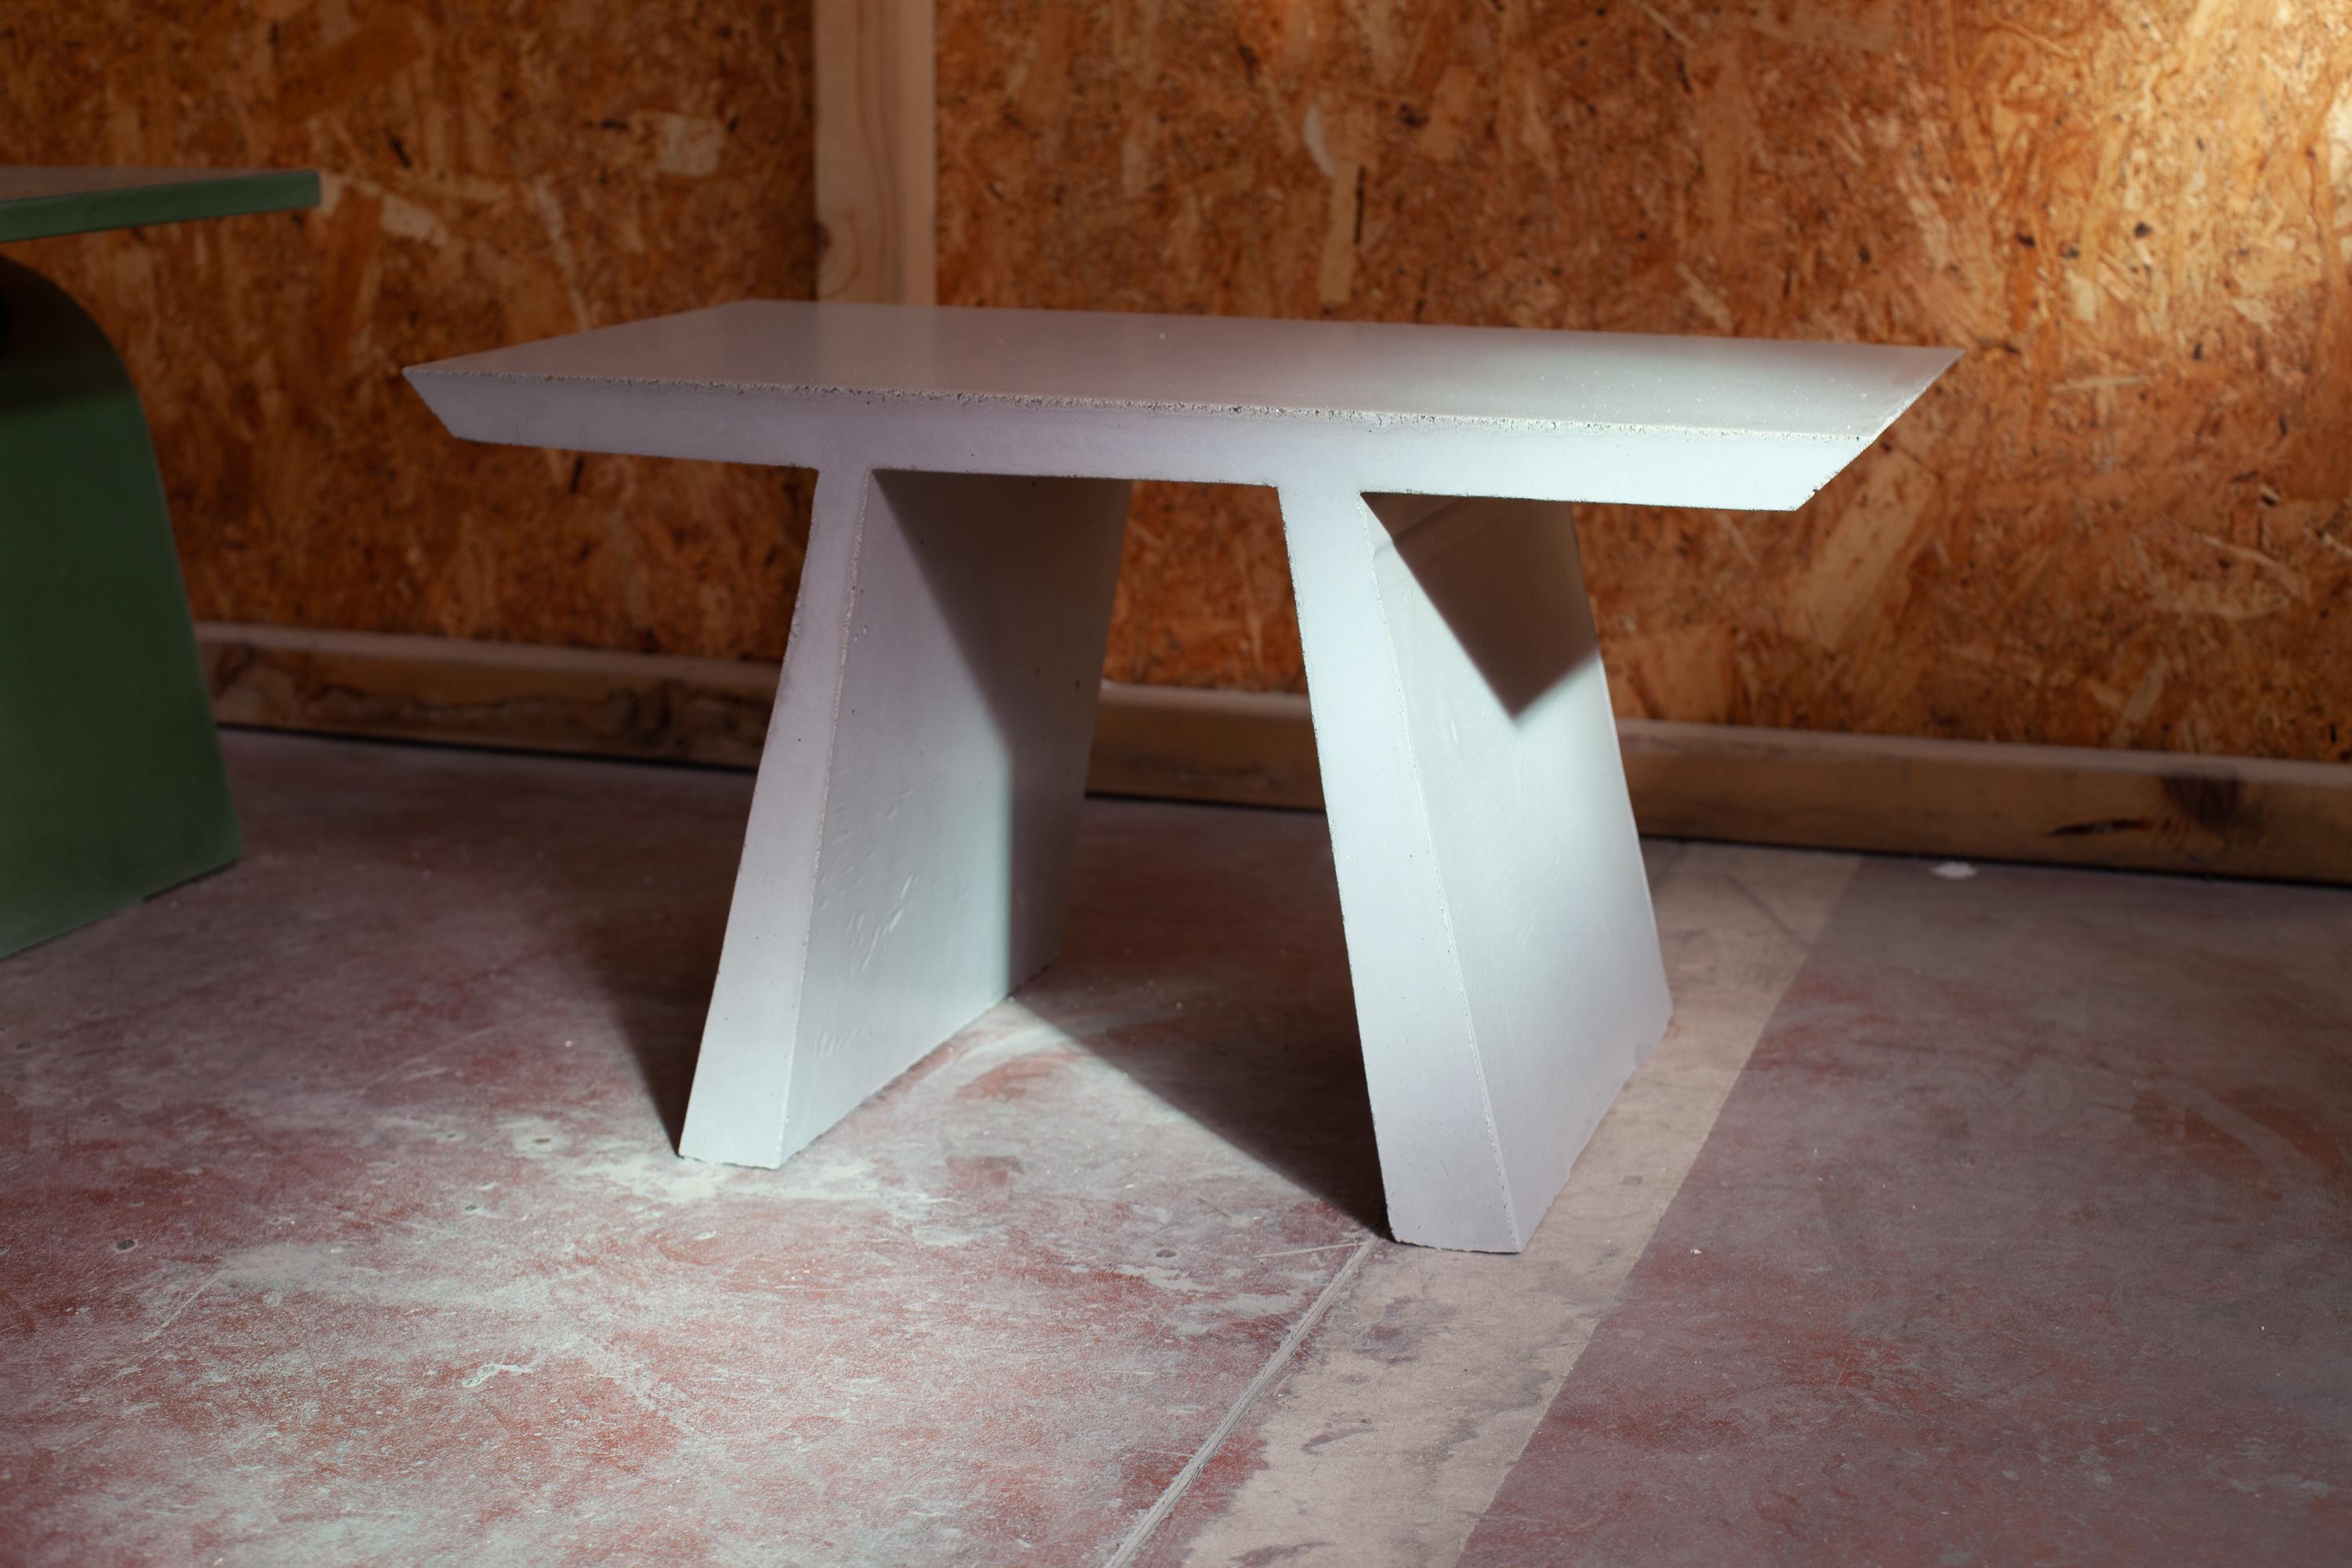 La table basse C fait partie de la collection Abecedario et marque le début d'un langage en ciment qui créera un alphabet en béton composé de tables et de tabourets coulés à travers une couche de béton à l'intérieur d'un moule extrudé. 
Les